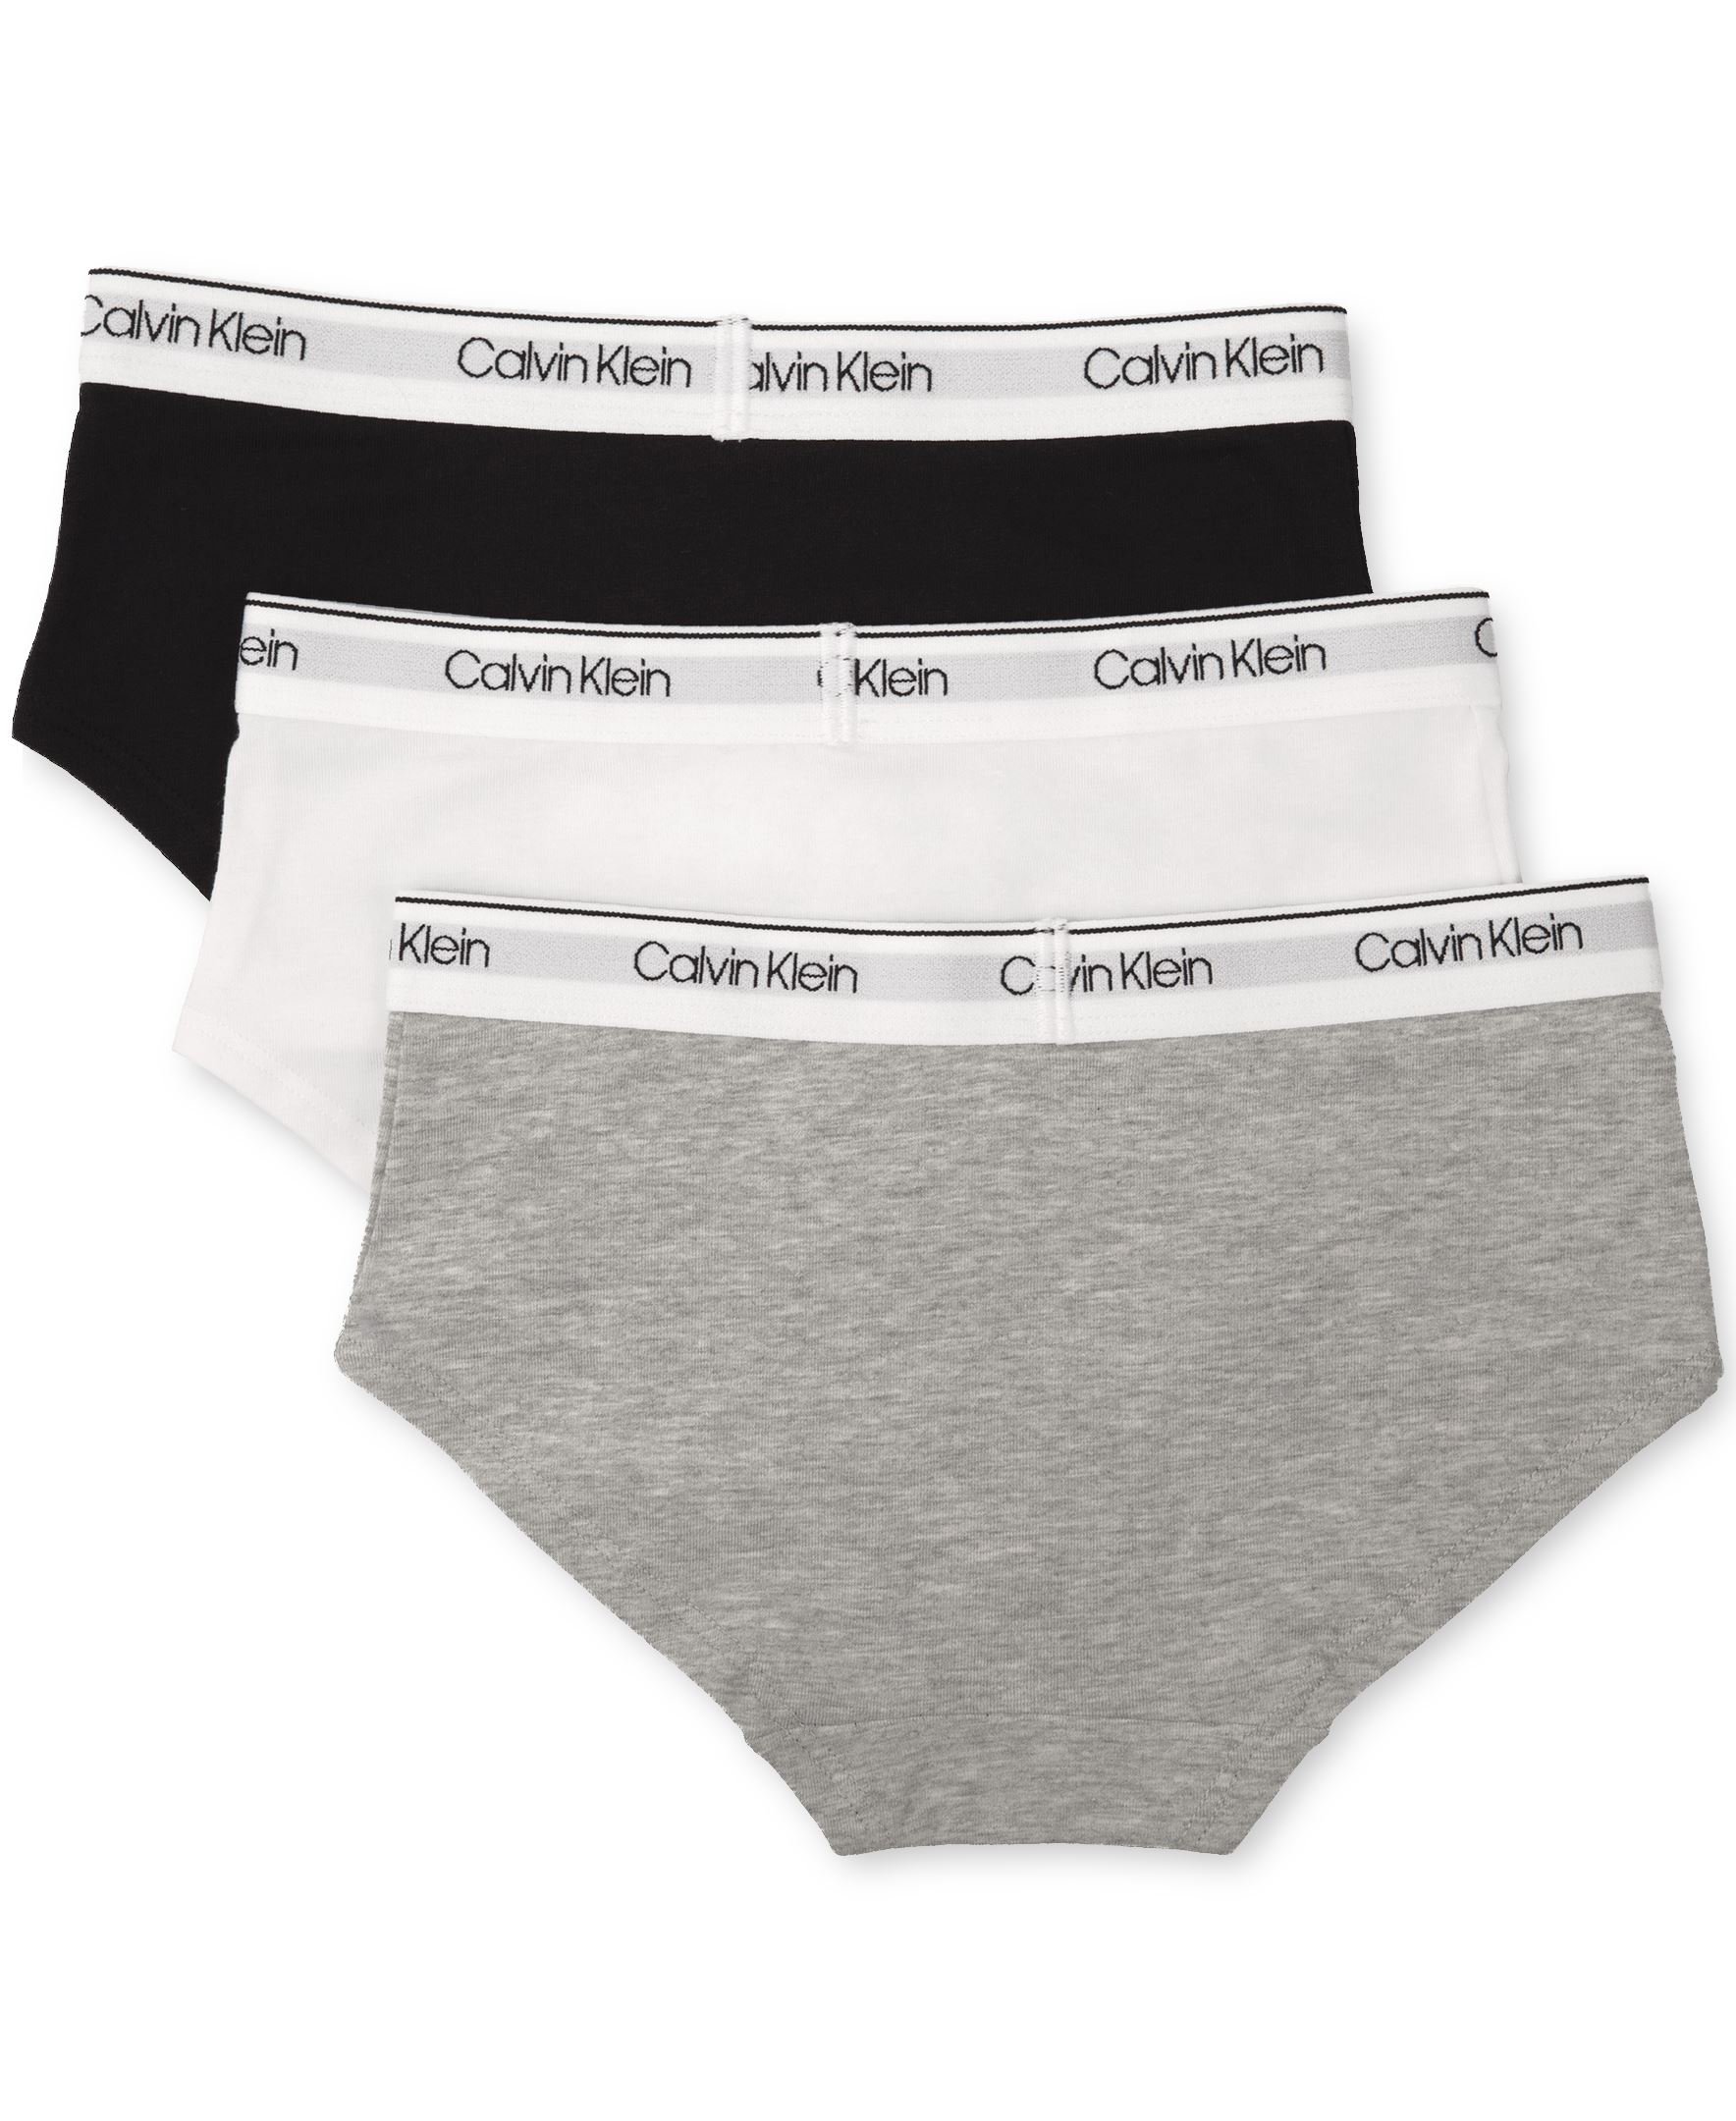 Calvin Klein Girls' Kids Modern Cotton Hipster Underwear, Multipack